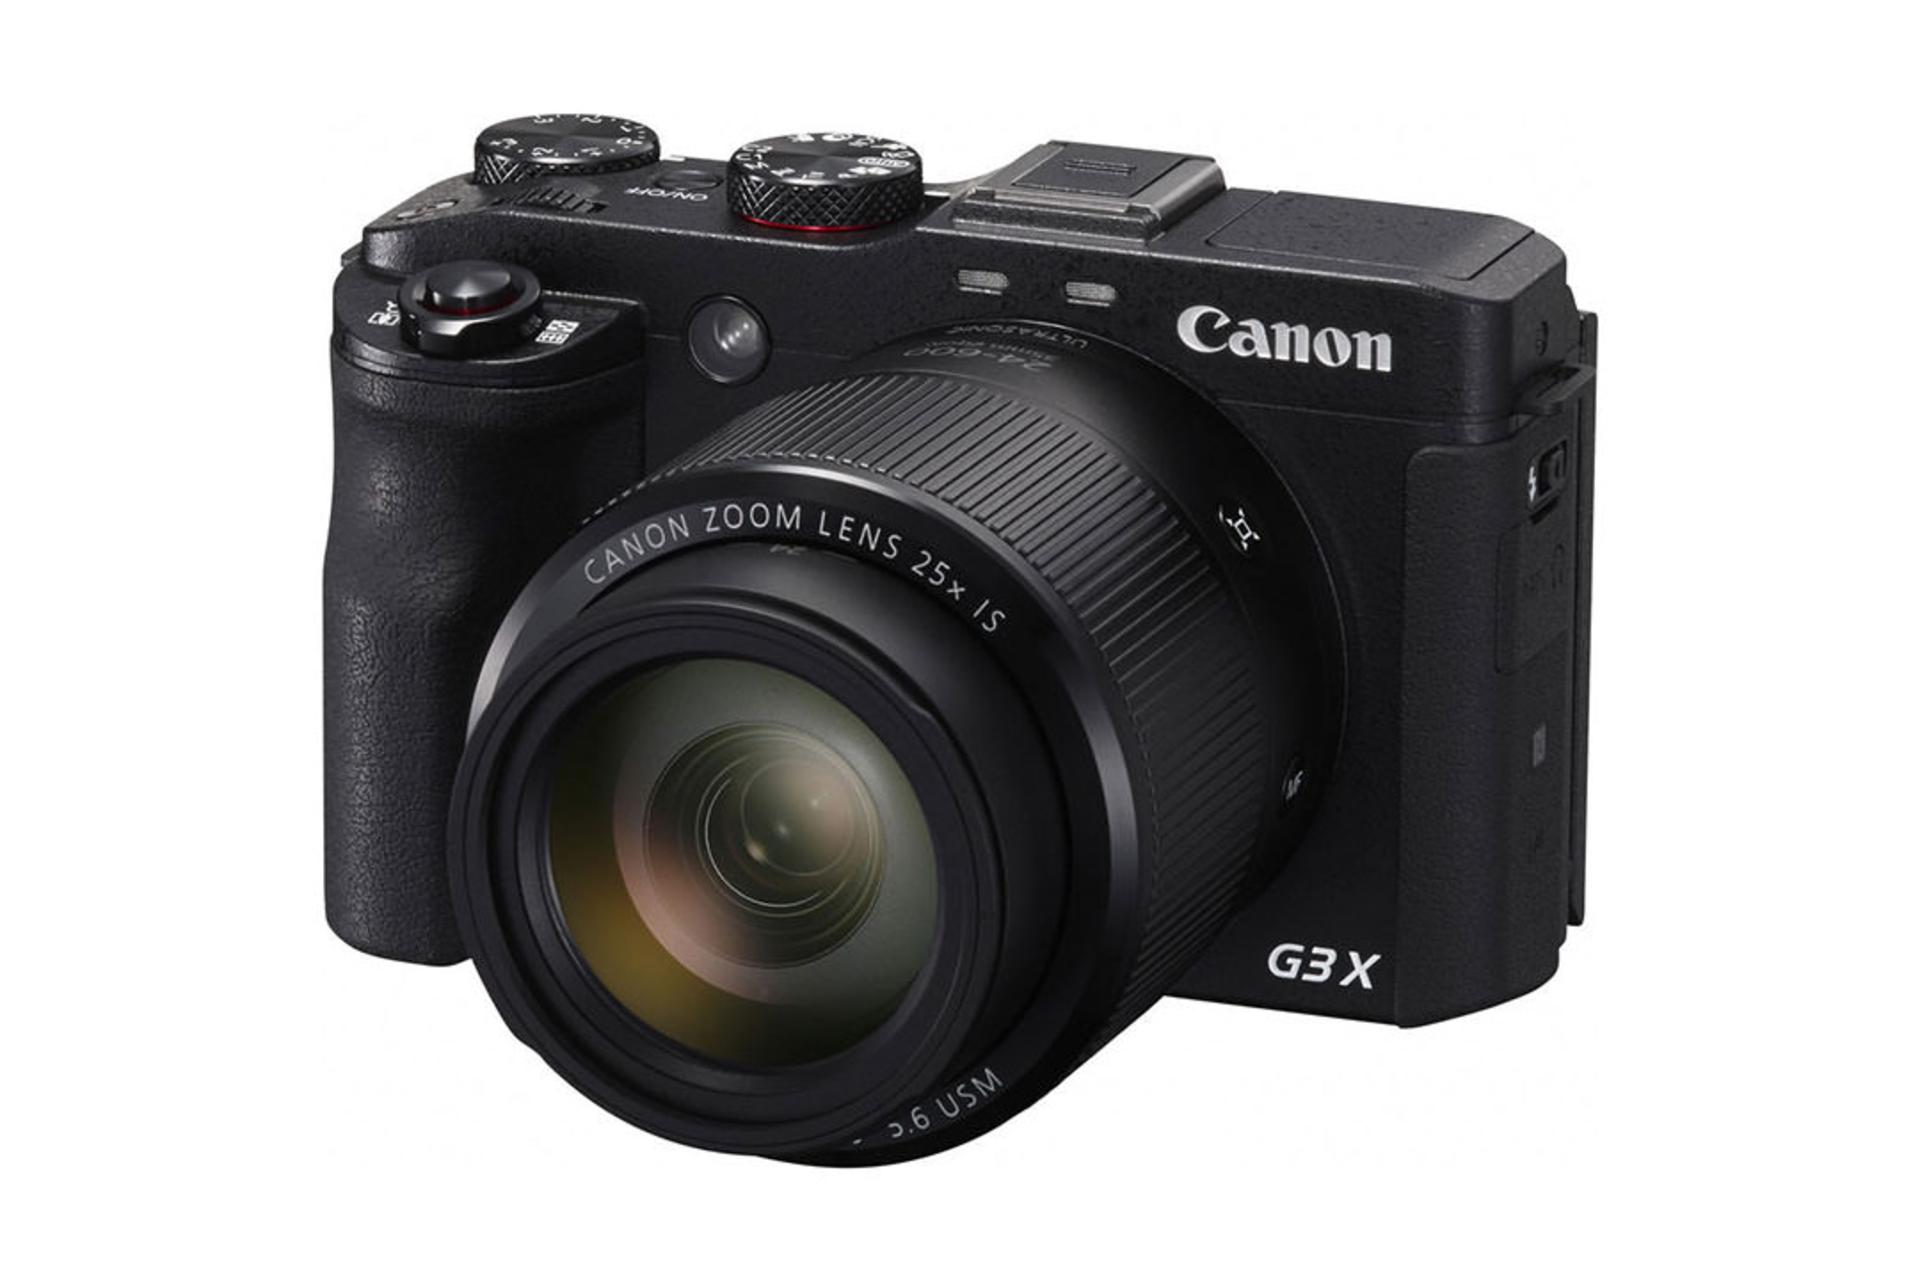 Canon PowerShot G3 X	